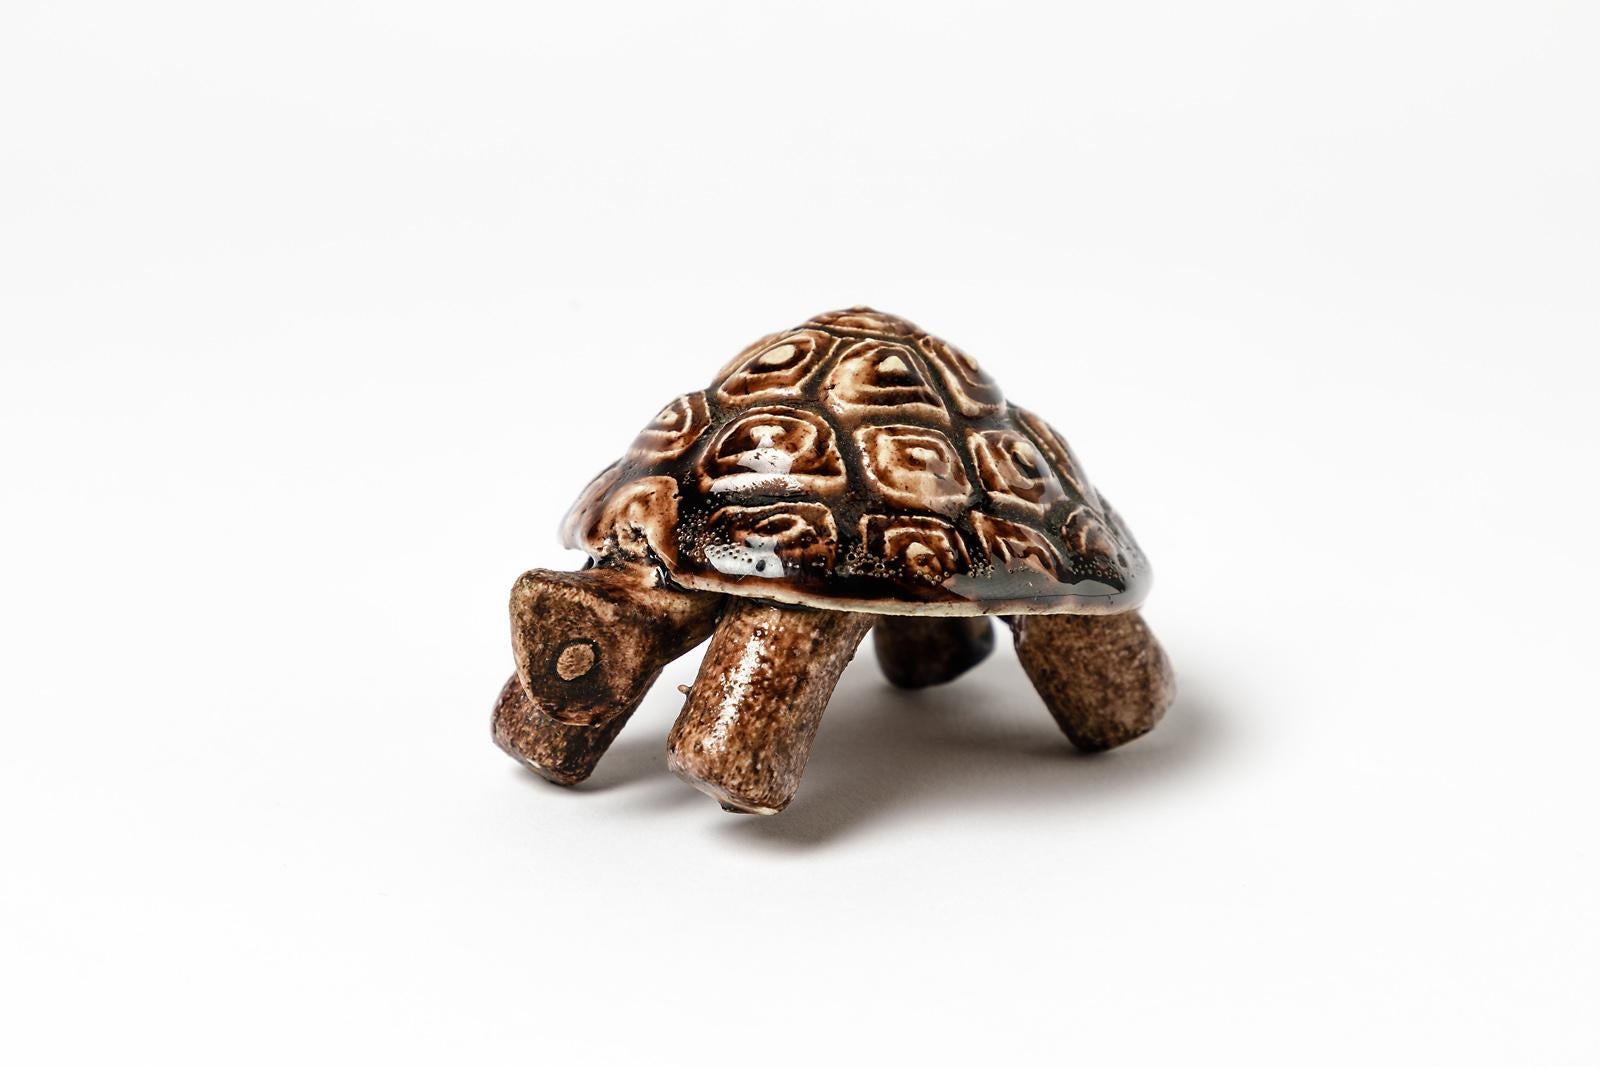 Accolay

Tierkeramik-Skulptur von französischem Keramiker von accolay.

Schildkrötenform mit brauner Töpferfarbe.

Signiert unter dem Sockel

Abmessungen: 6 x 10 cm.